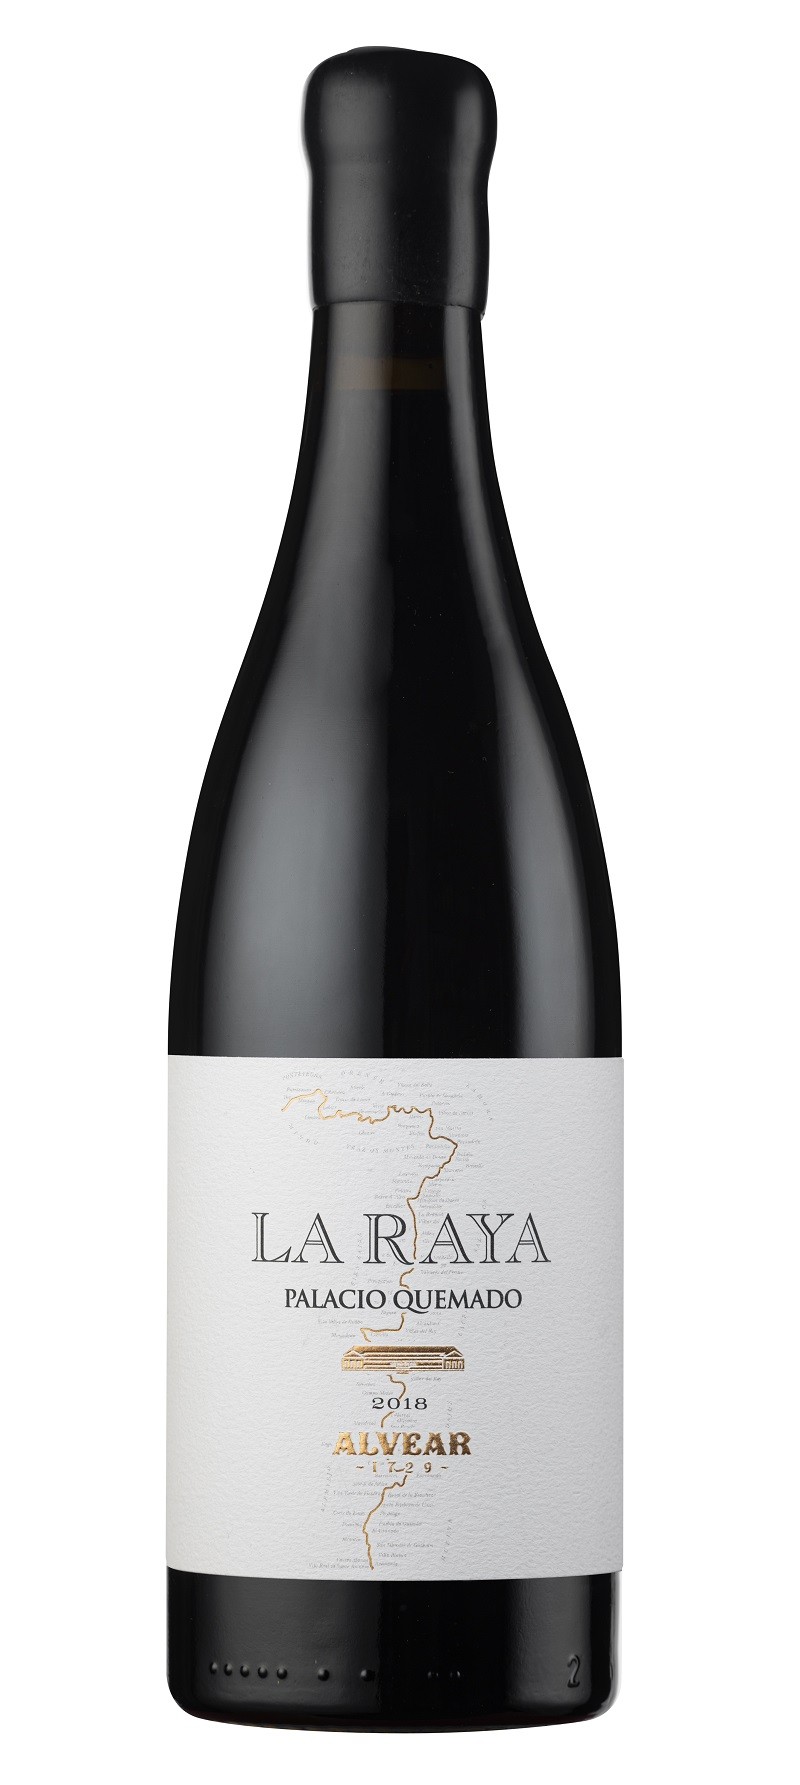 La Raya 2018 es un vino de color rojo picota